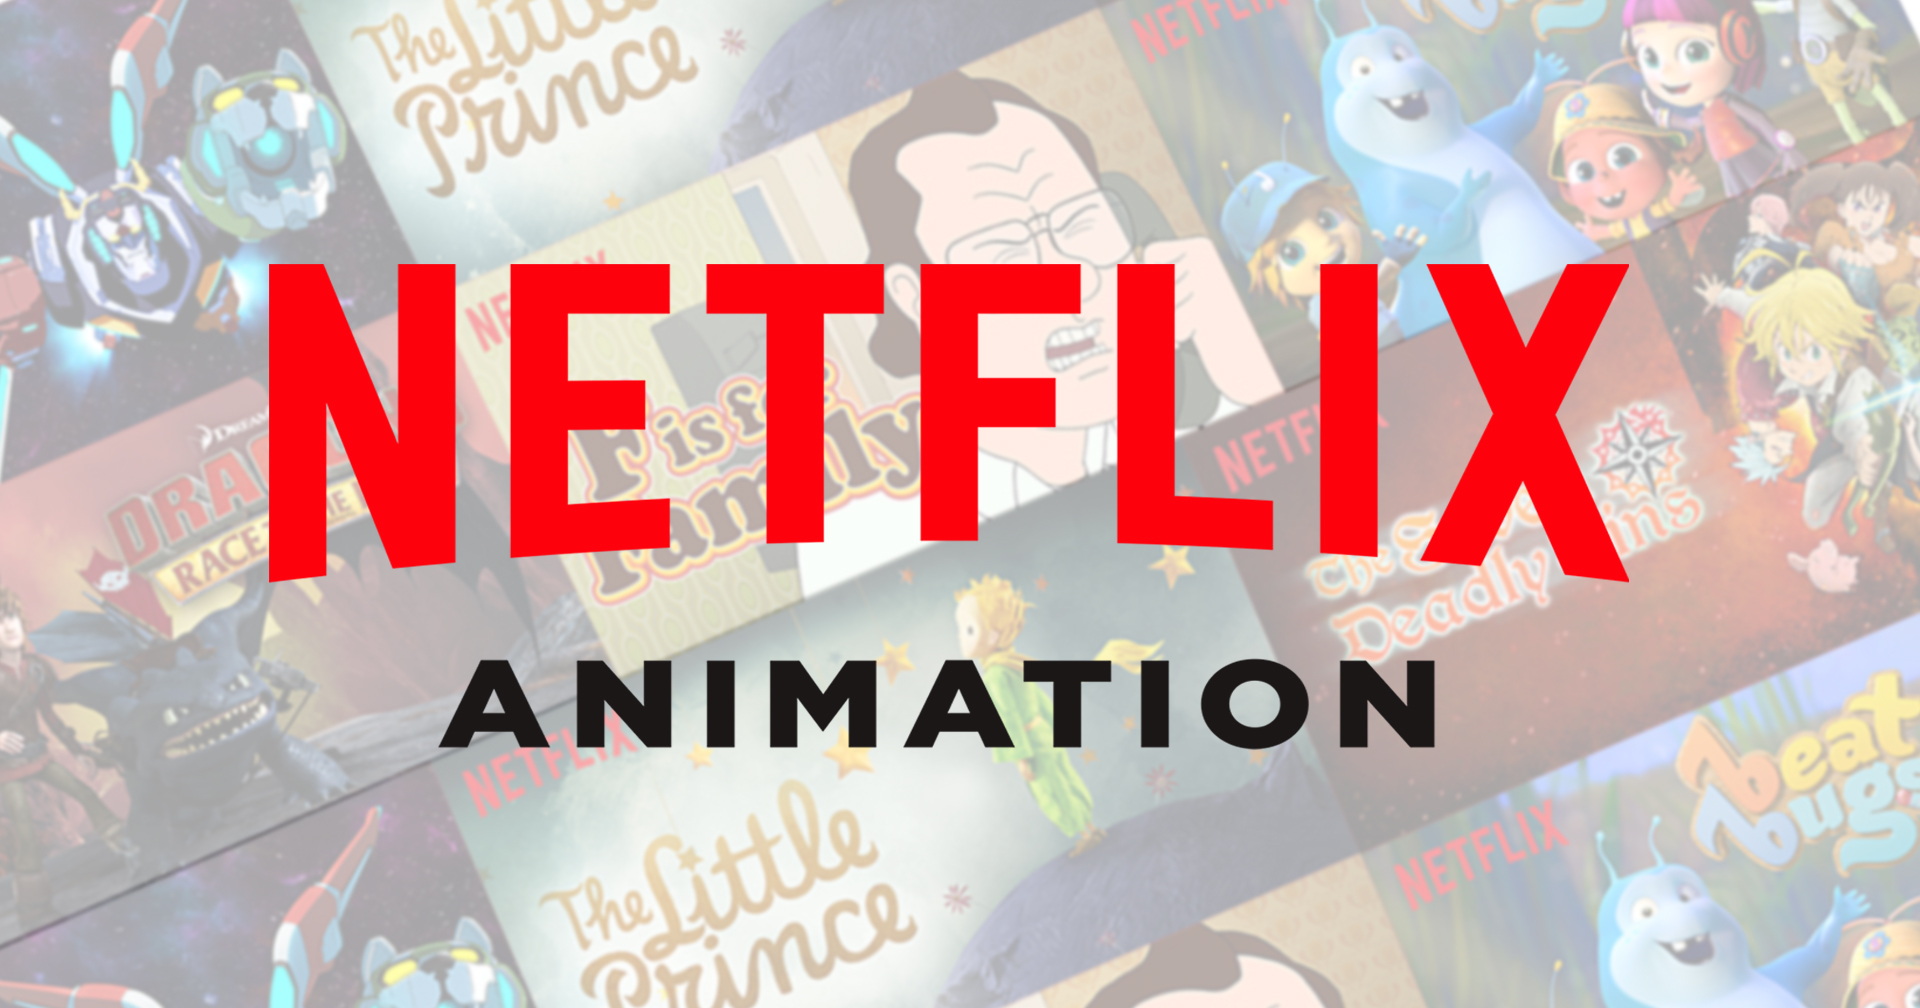 Netflix ไล่ผู้บริหารแอนิเมชันออก : ยกเลิกซีรีส์และโปรเจกต์หลายเรื่อง